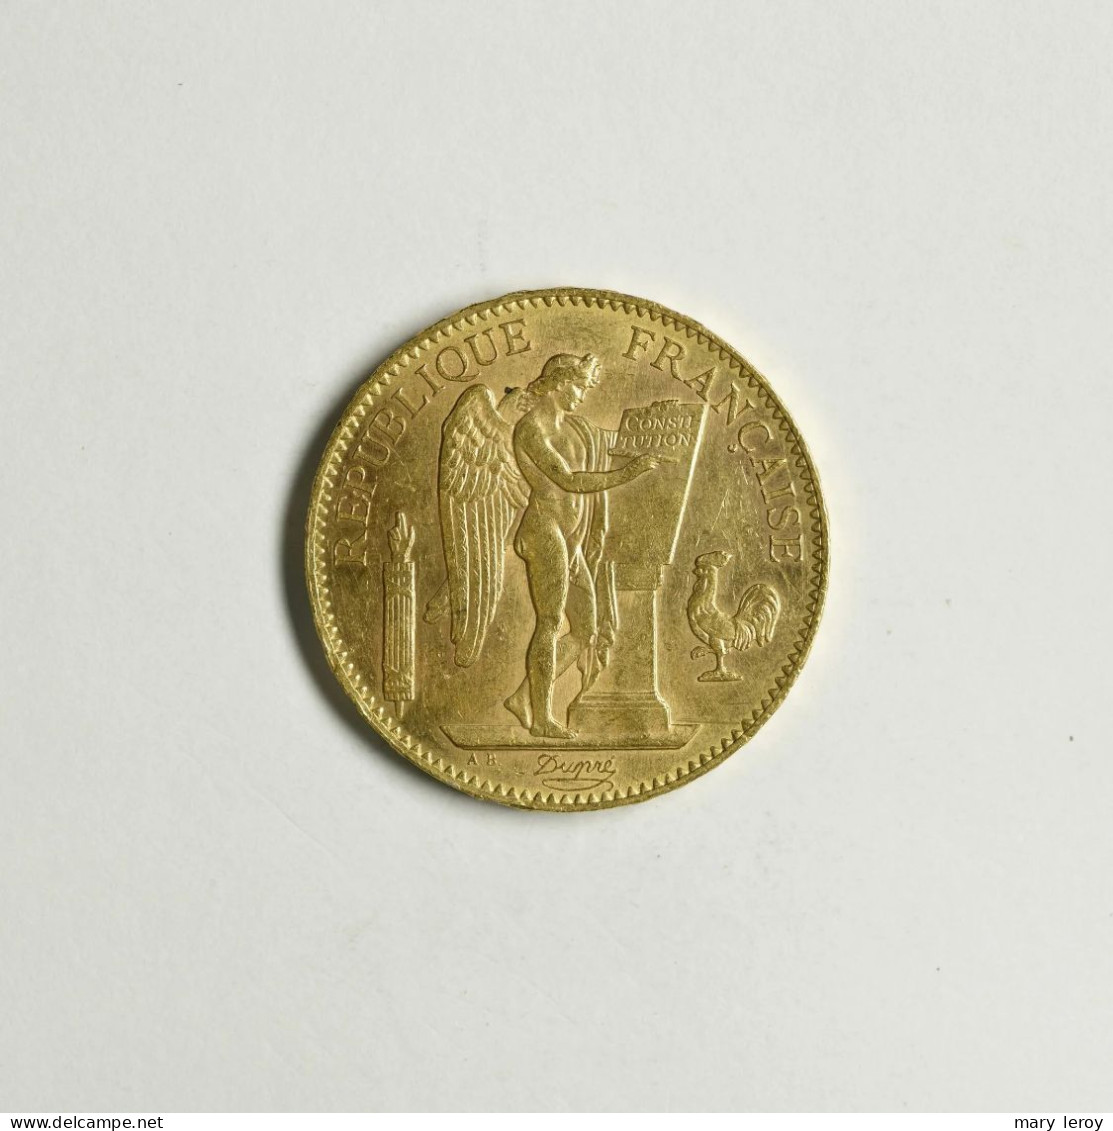 Superbe & Rare Pièce De 100 Francs Or Génie Paris 1908 G. 1137 - 100 Francs (oro)